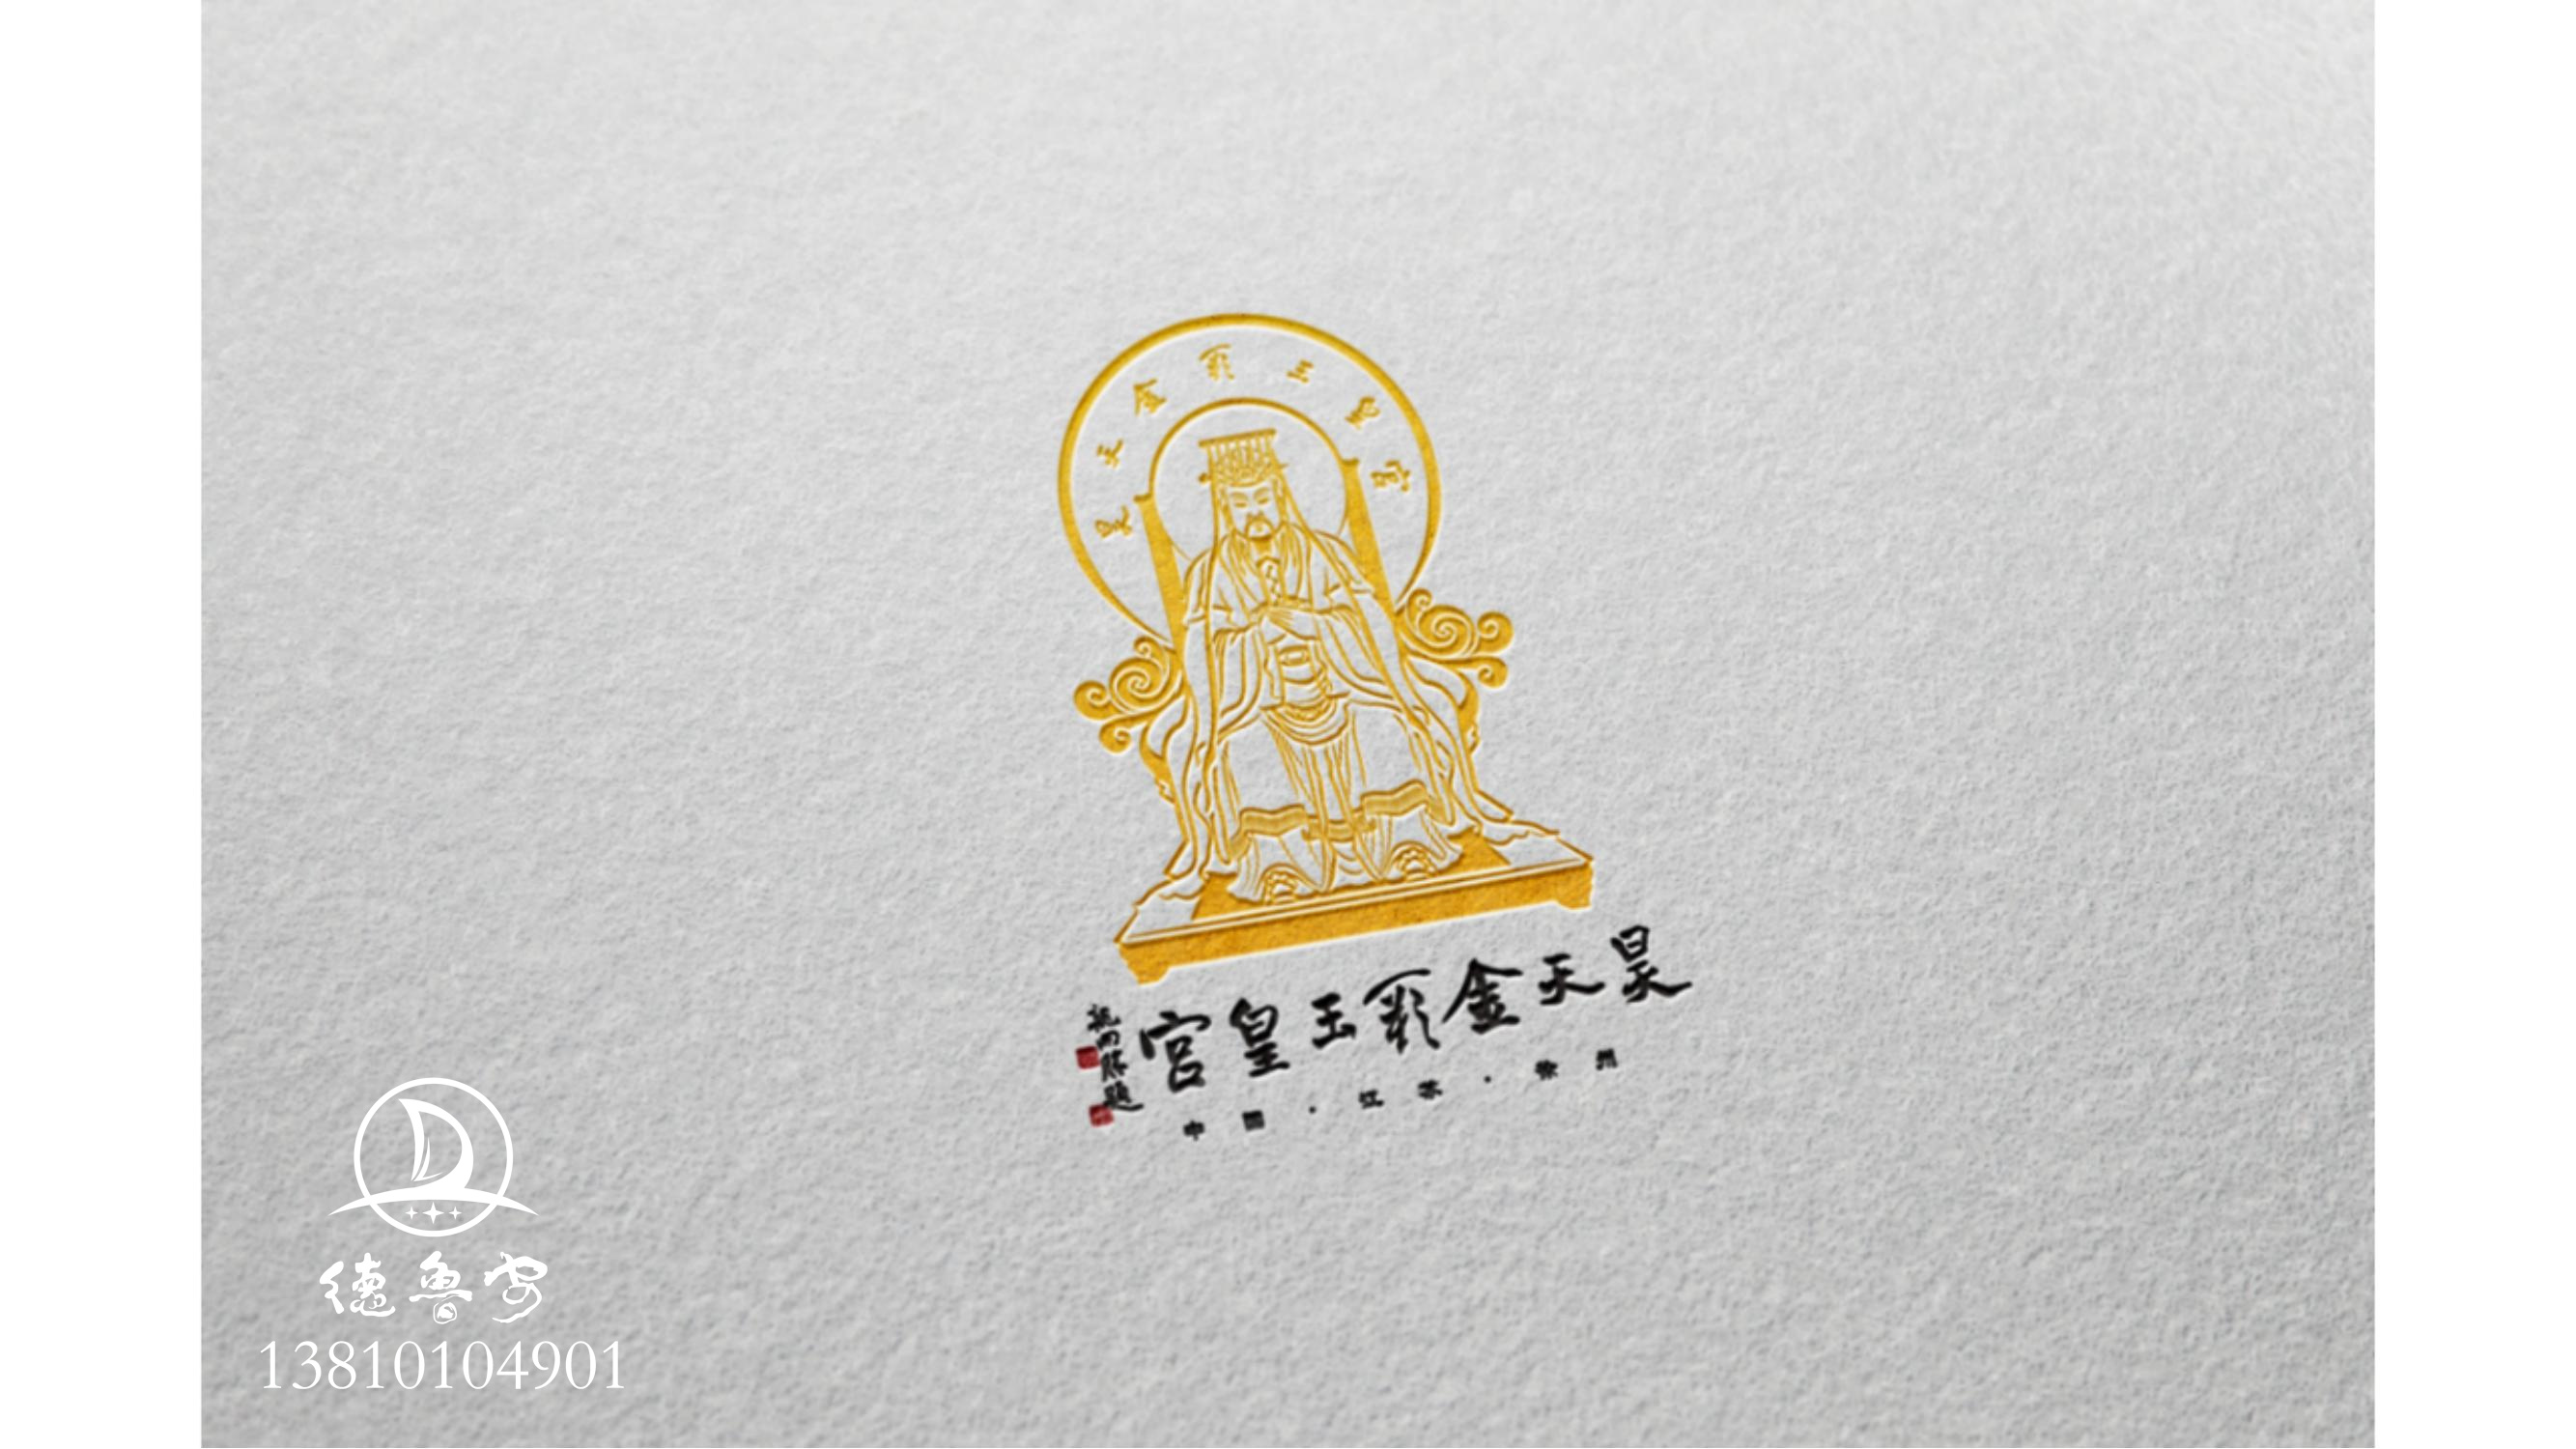 玉皇宫 logo定稿方案_05.jpg